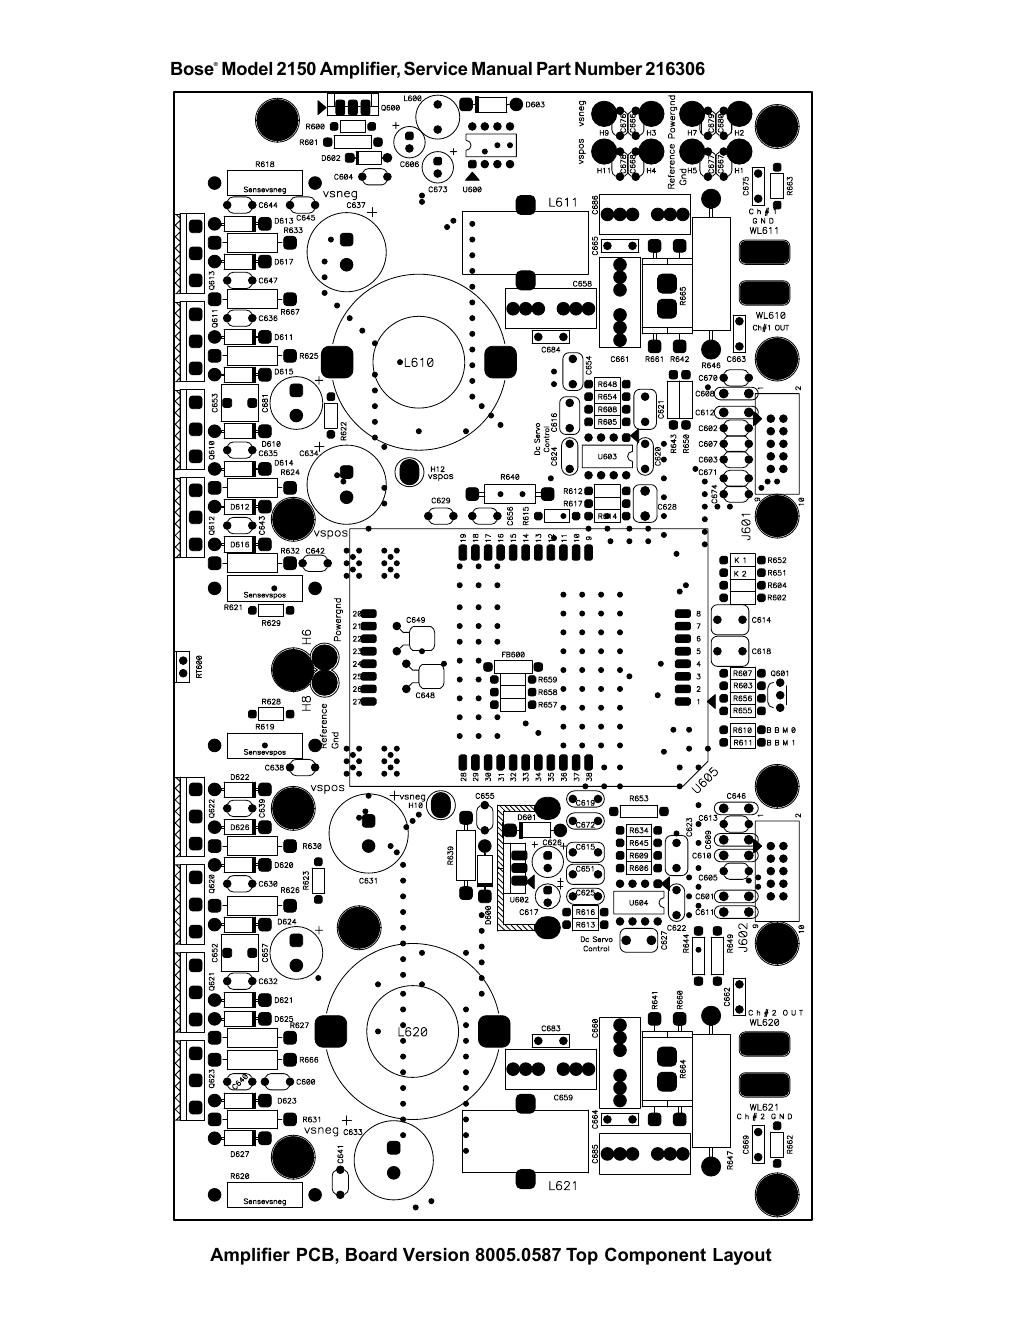 bose 2150 amplifier board layout 8005 0587a 2